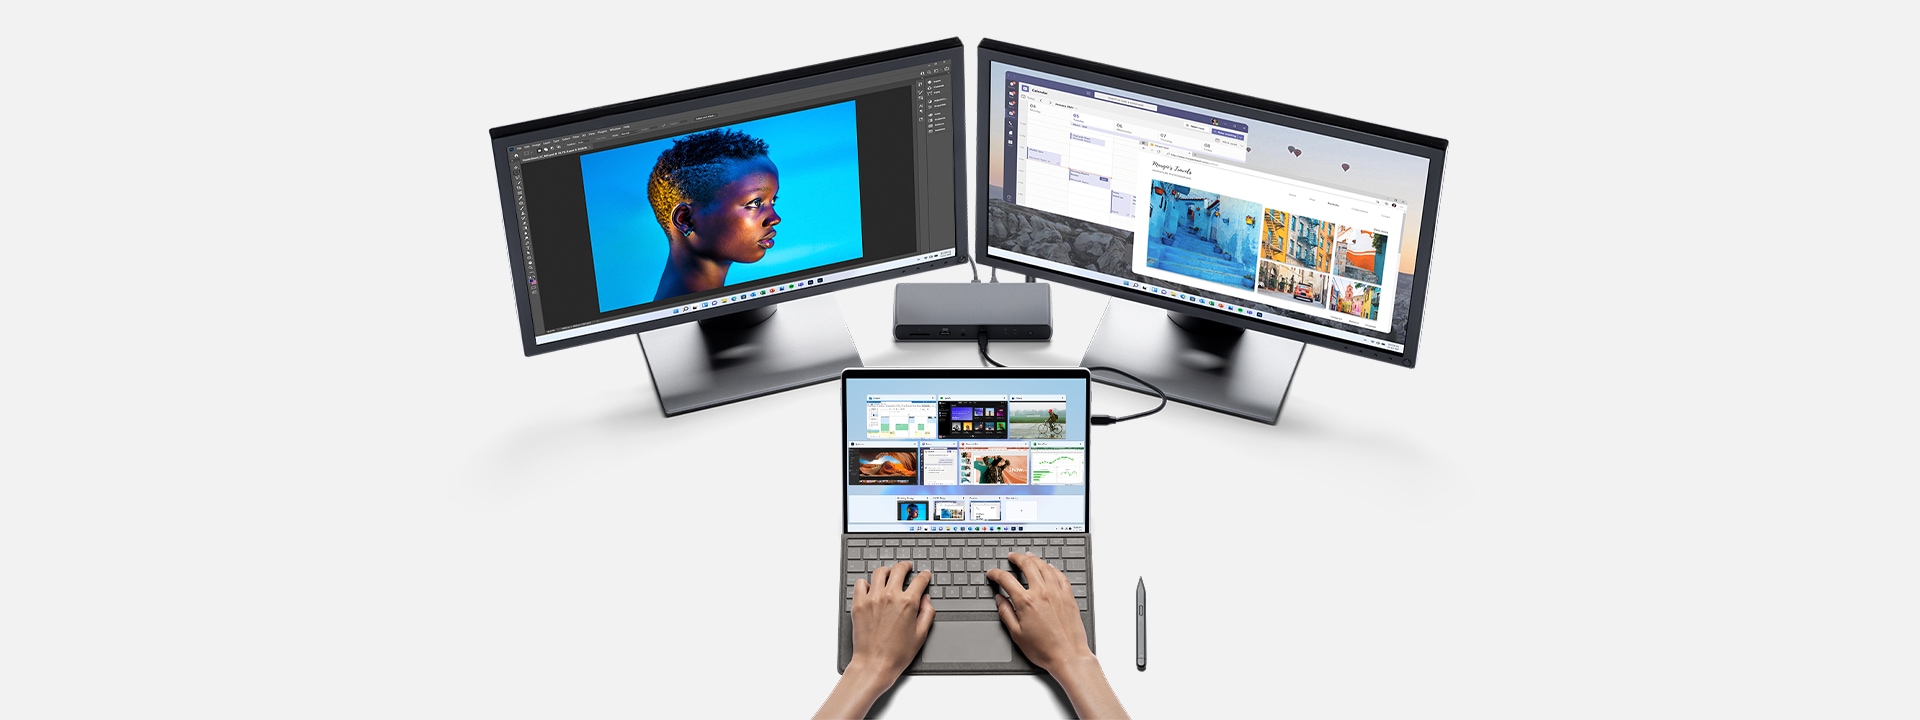 Surface Pro 8 пристыкнулся к рабочей станции с помощью Photoshop.